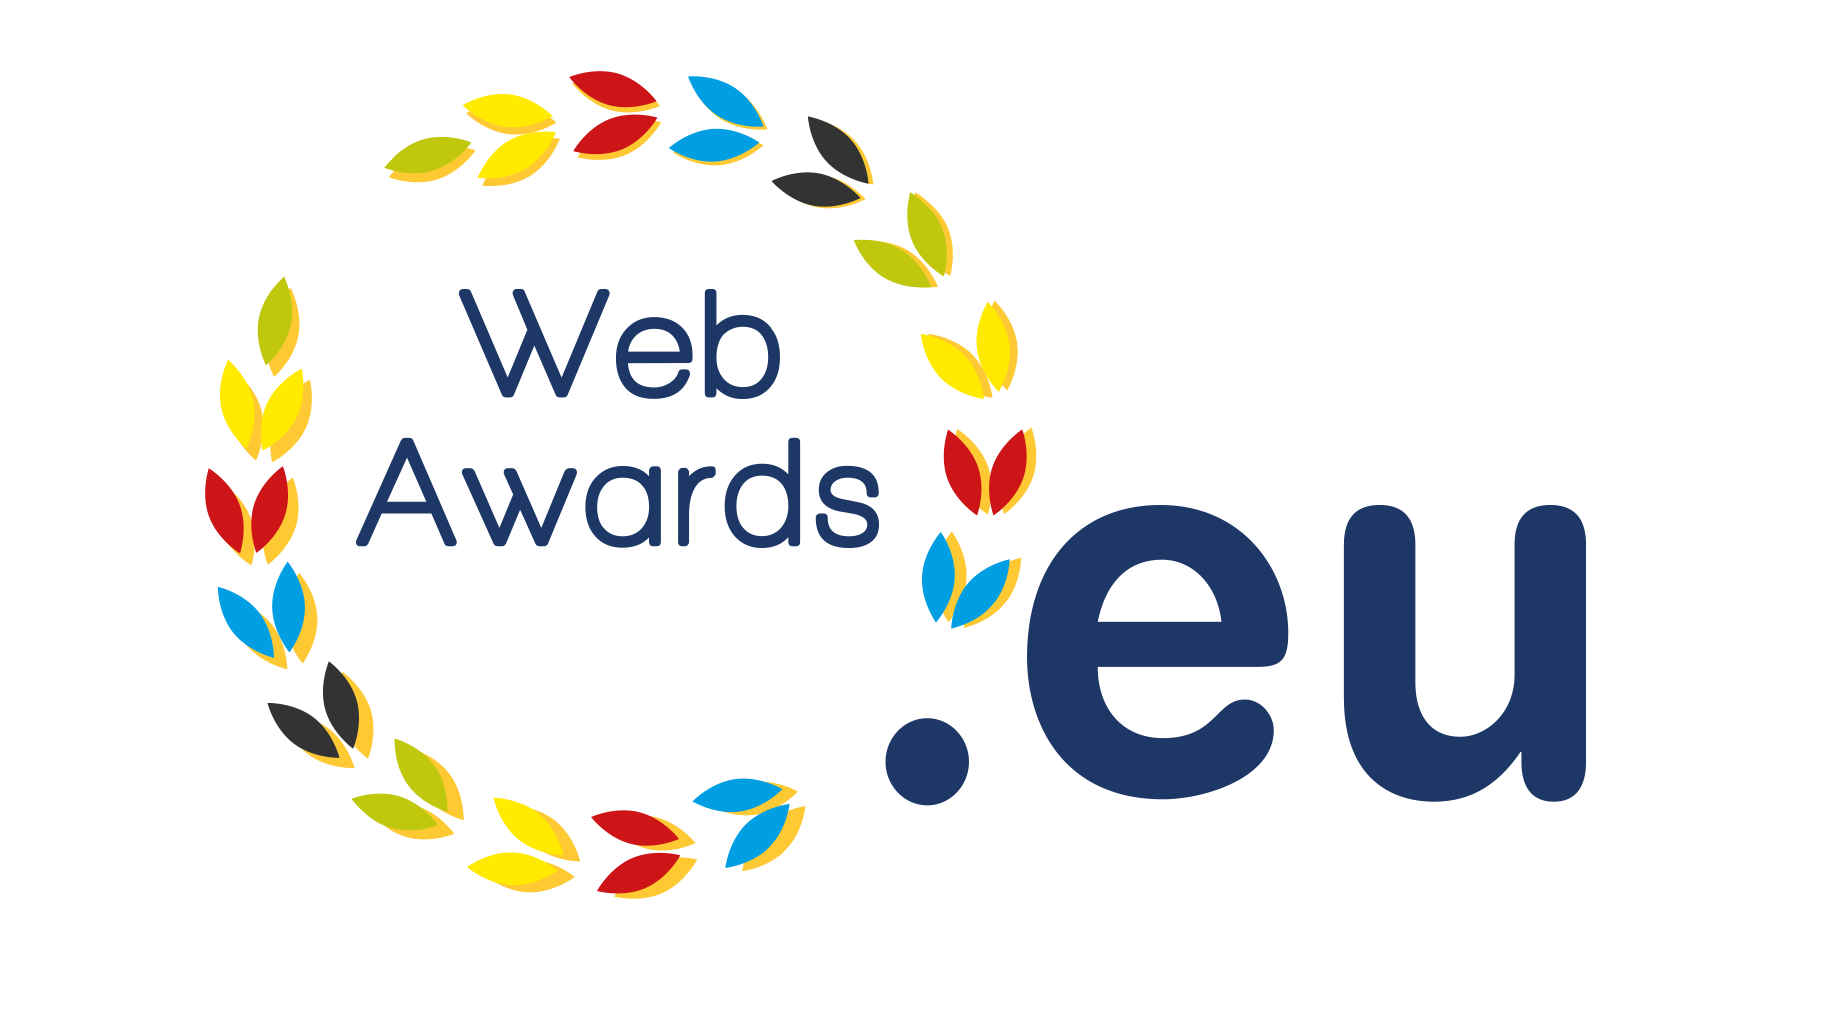 EU Web Awards logo